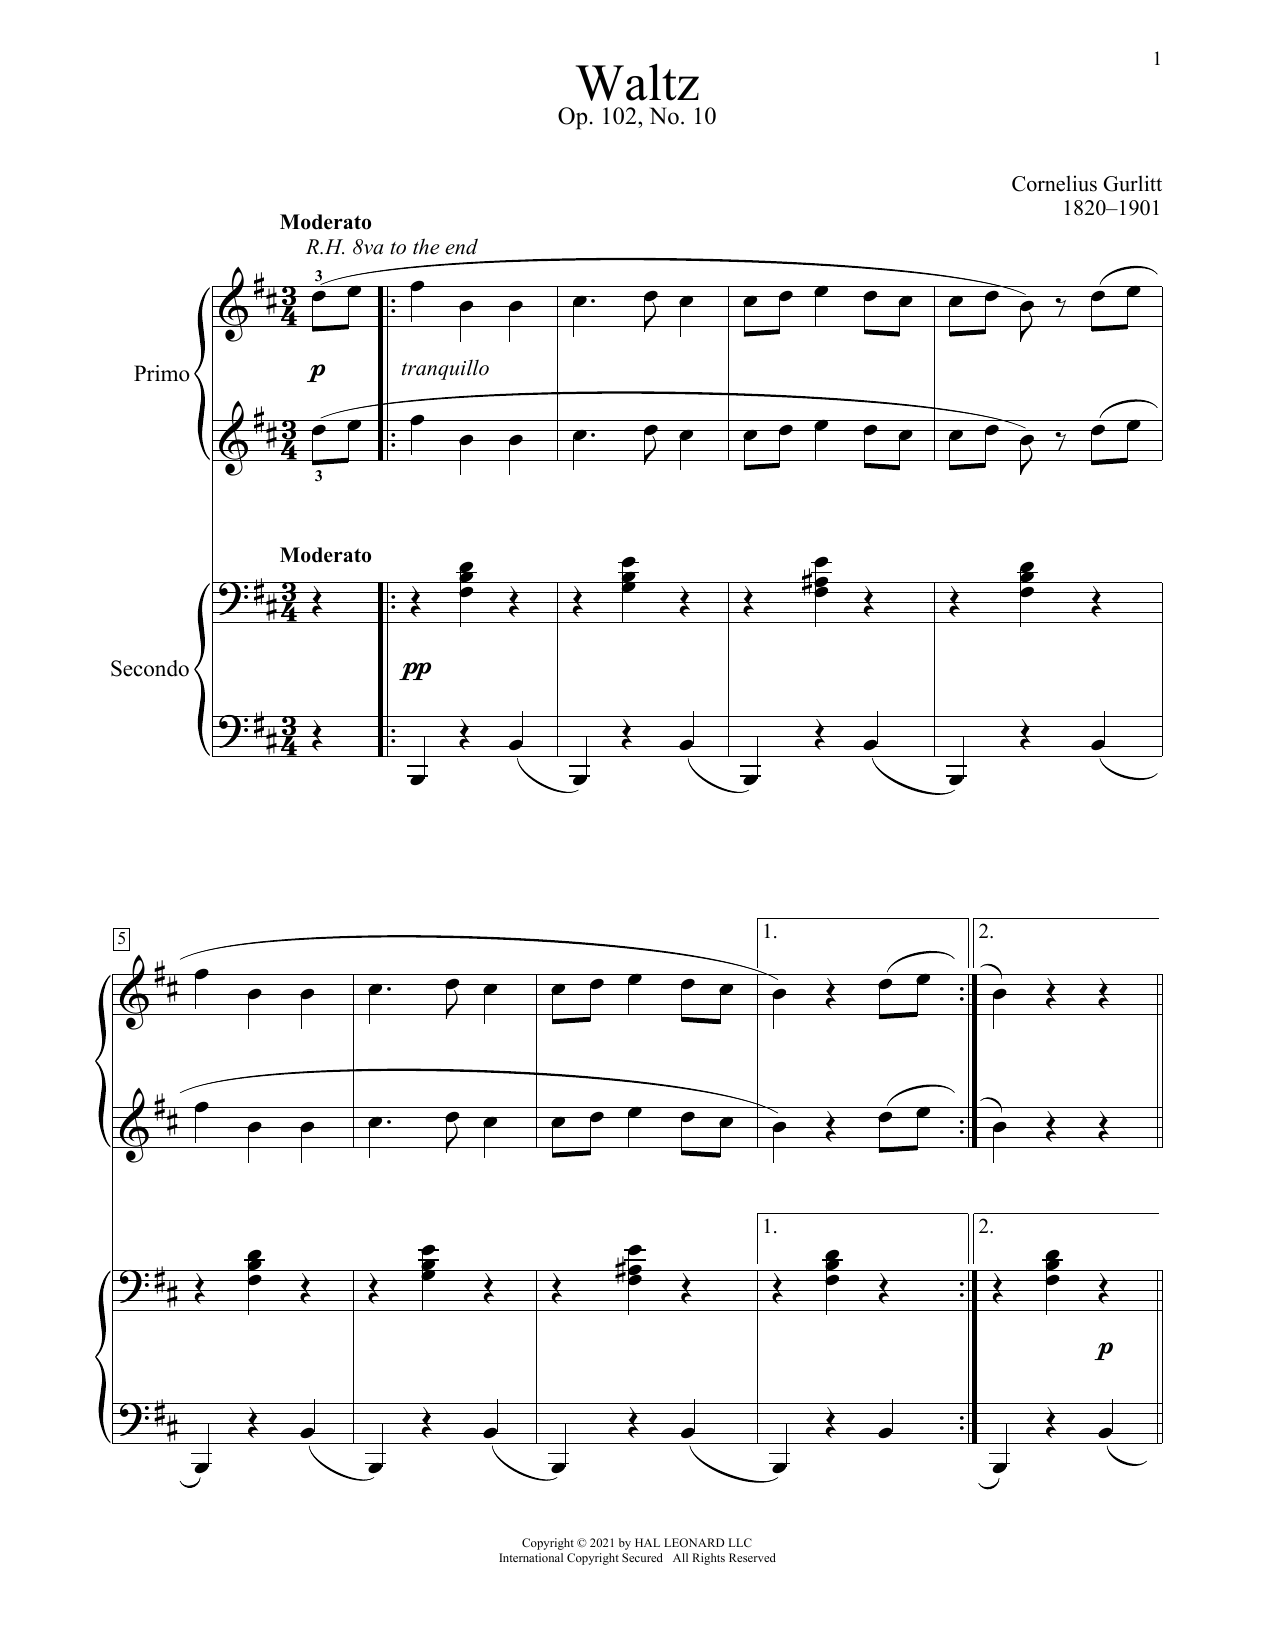 Download Cornelius Gurlitt Waltz, Op. 102, No. 10 Sheet Music